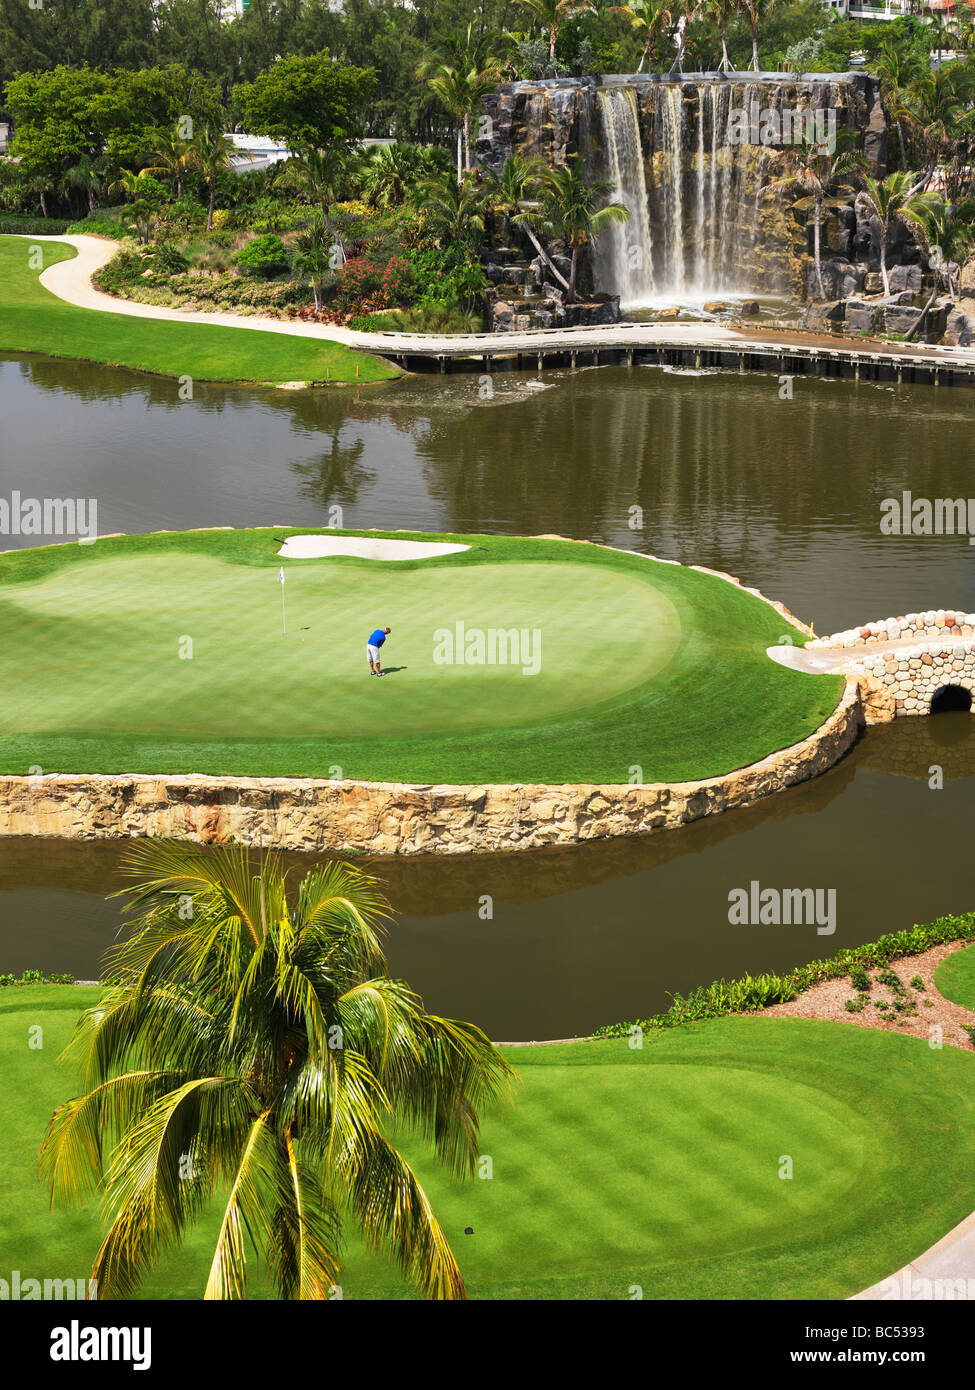 États-Unis, Floride, Aventura, parcours de golf 18th trous au Fairmont Turnberry Isle Resort & Club. Vert de golf entouré d'eau. Banque D'Images